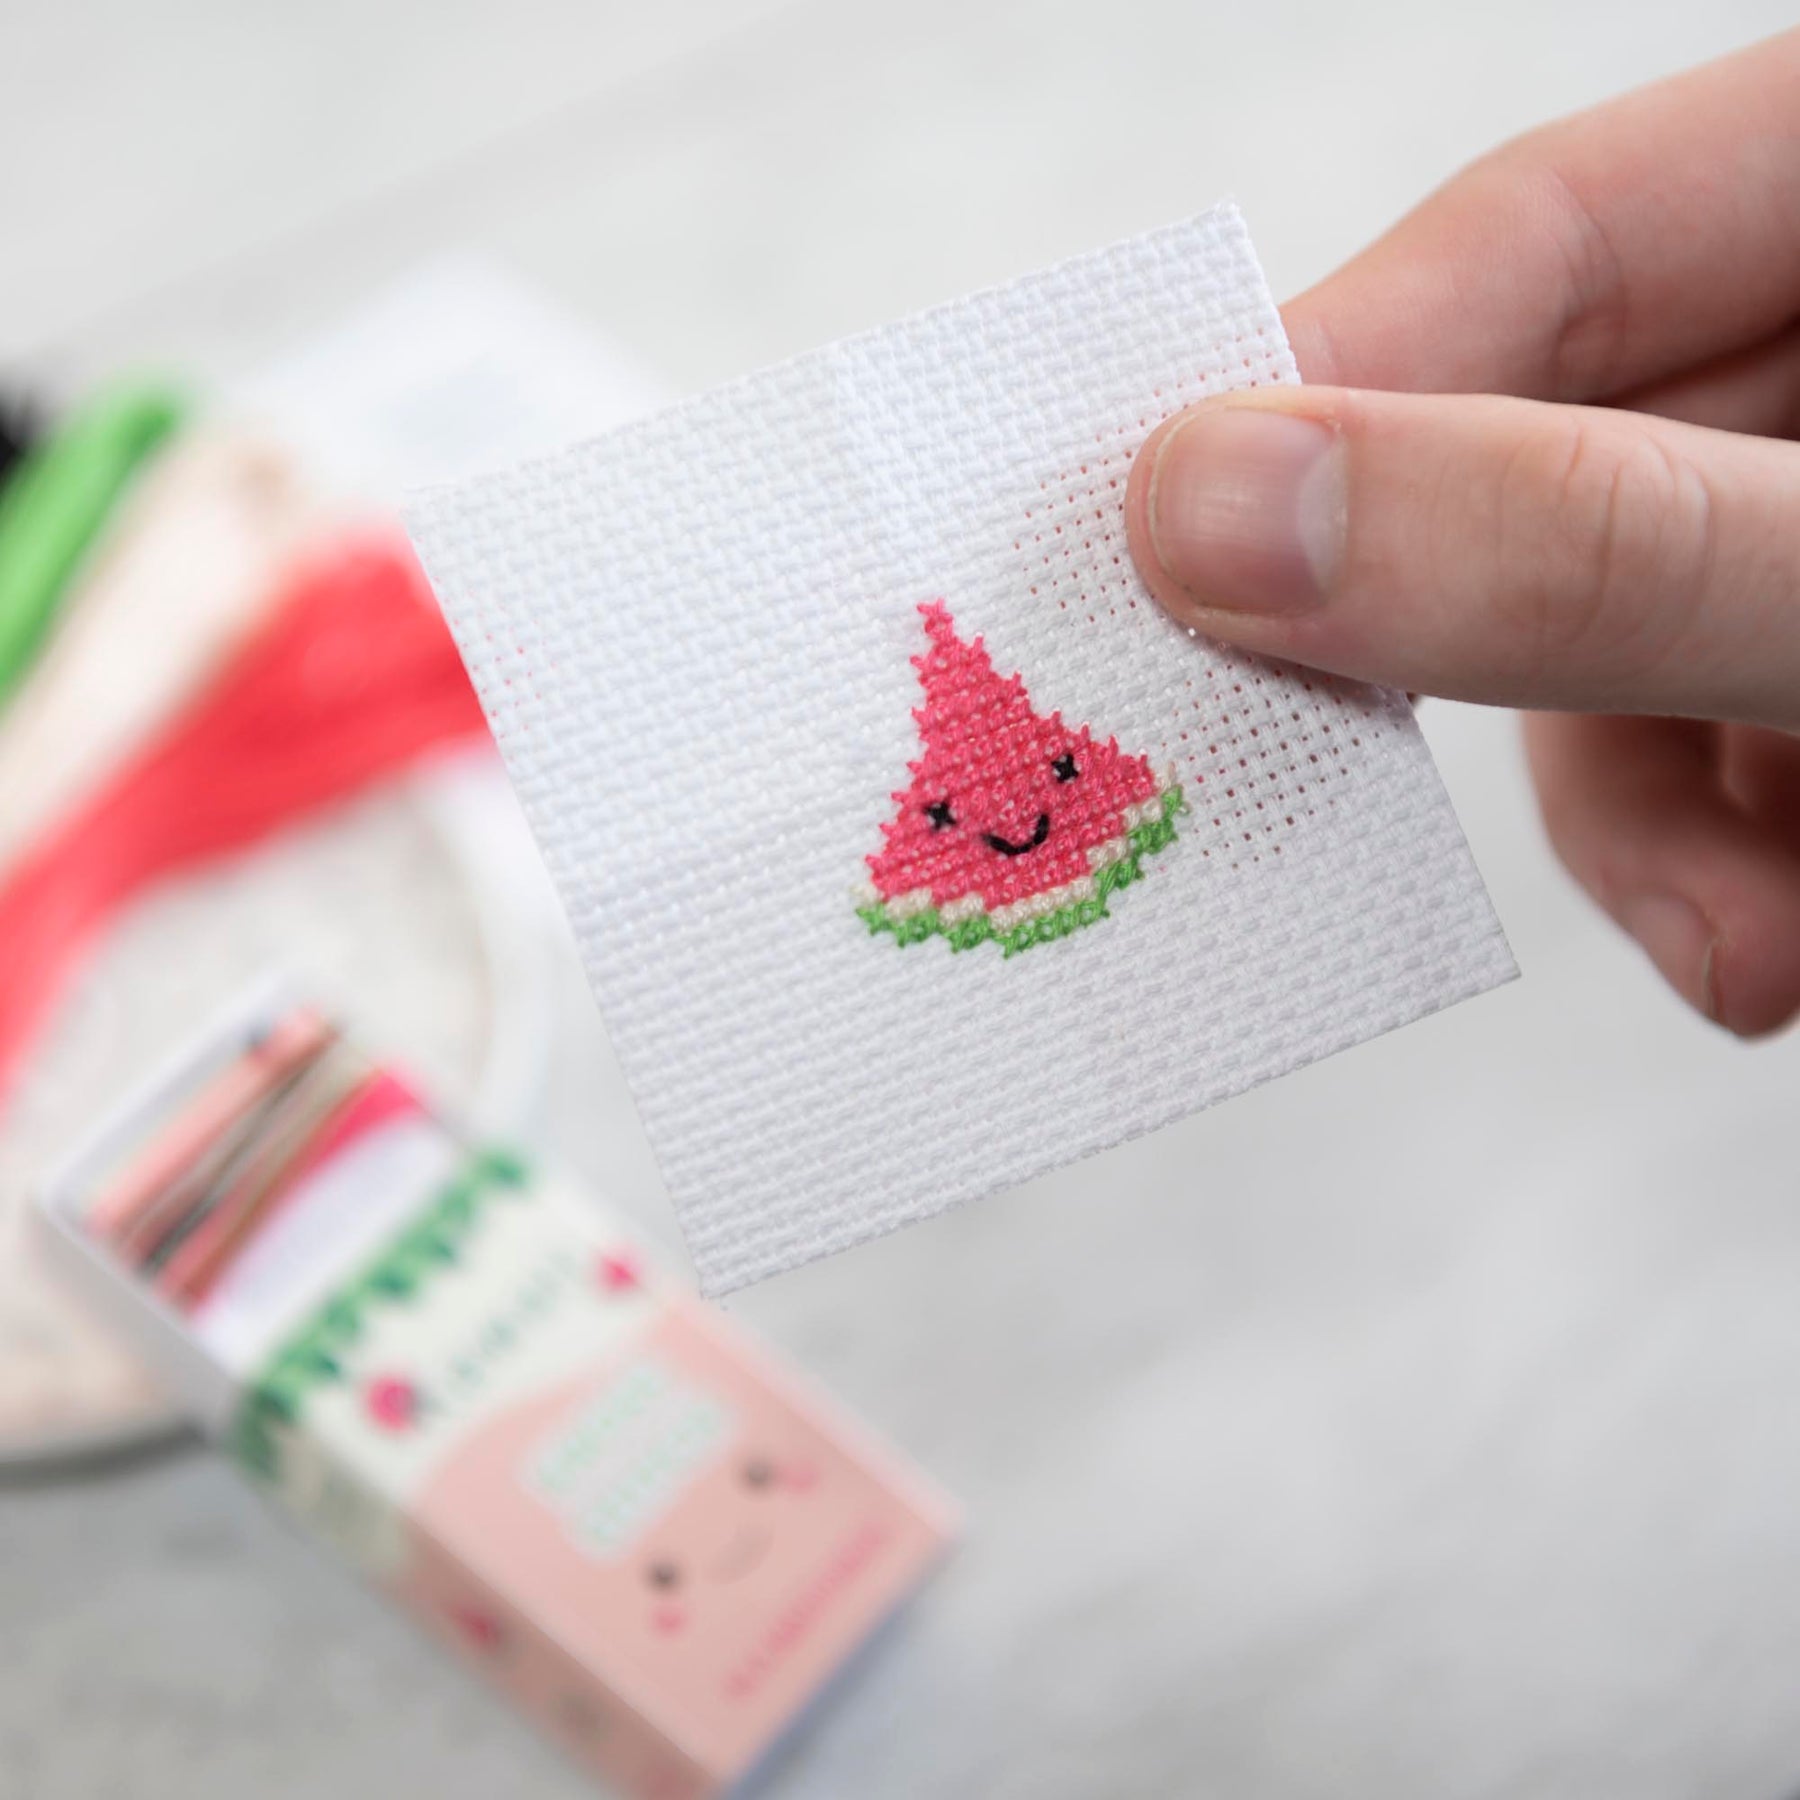 Mini Cross Stitch Kit With Kawaii Watermelon Design